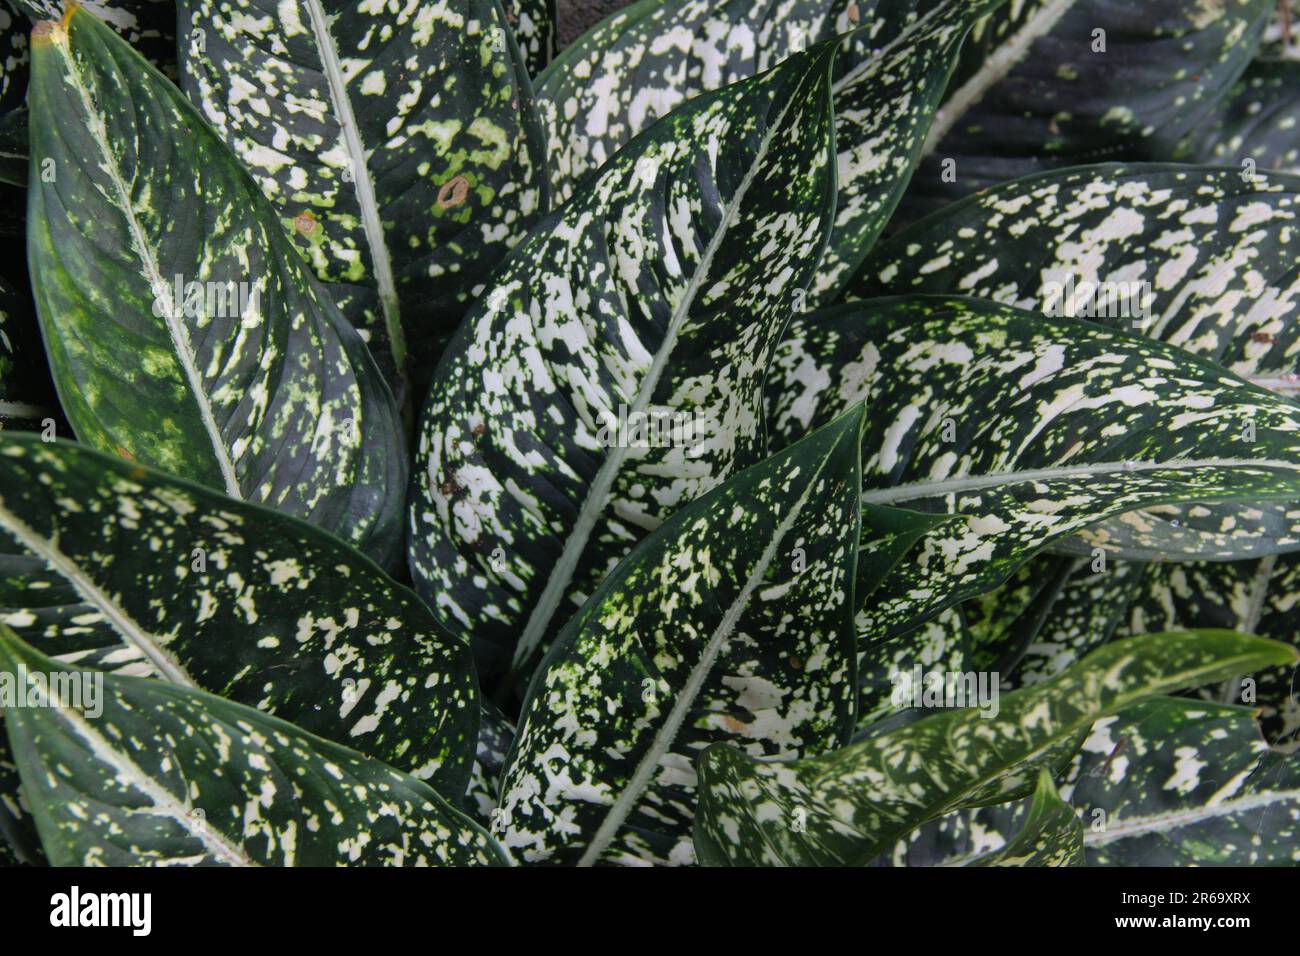 Aglaonema costatum or Chinese Evergreen Stock Photo